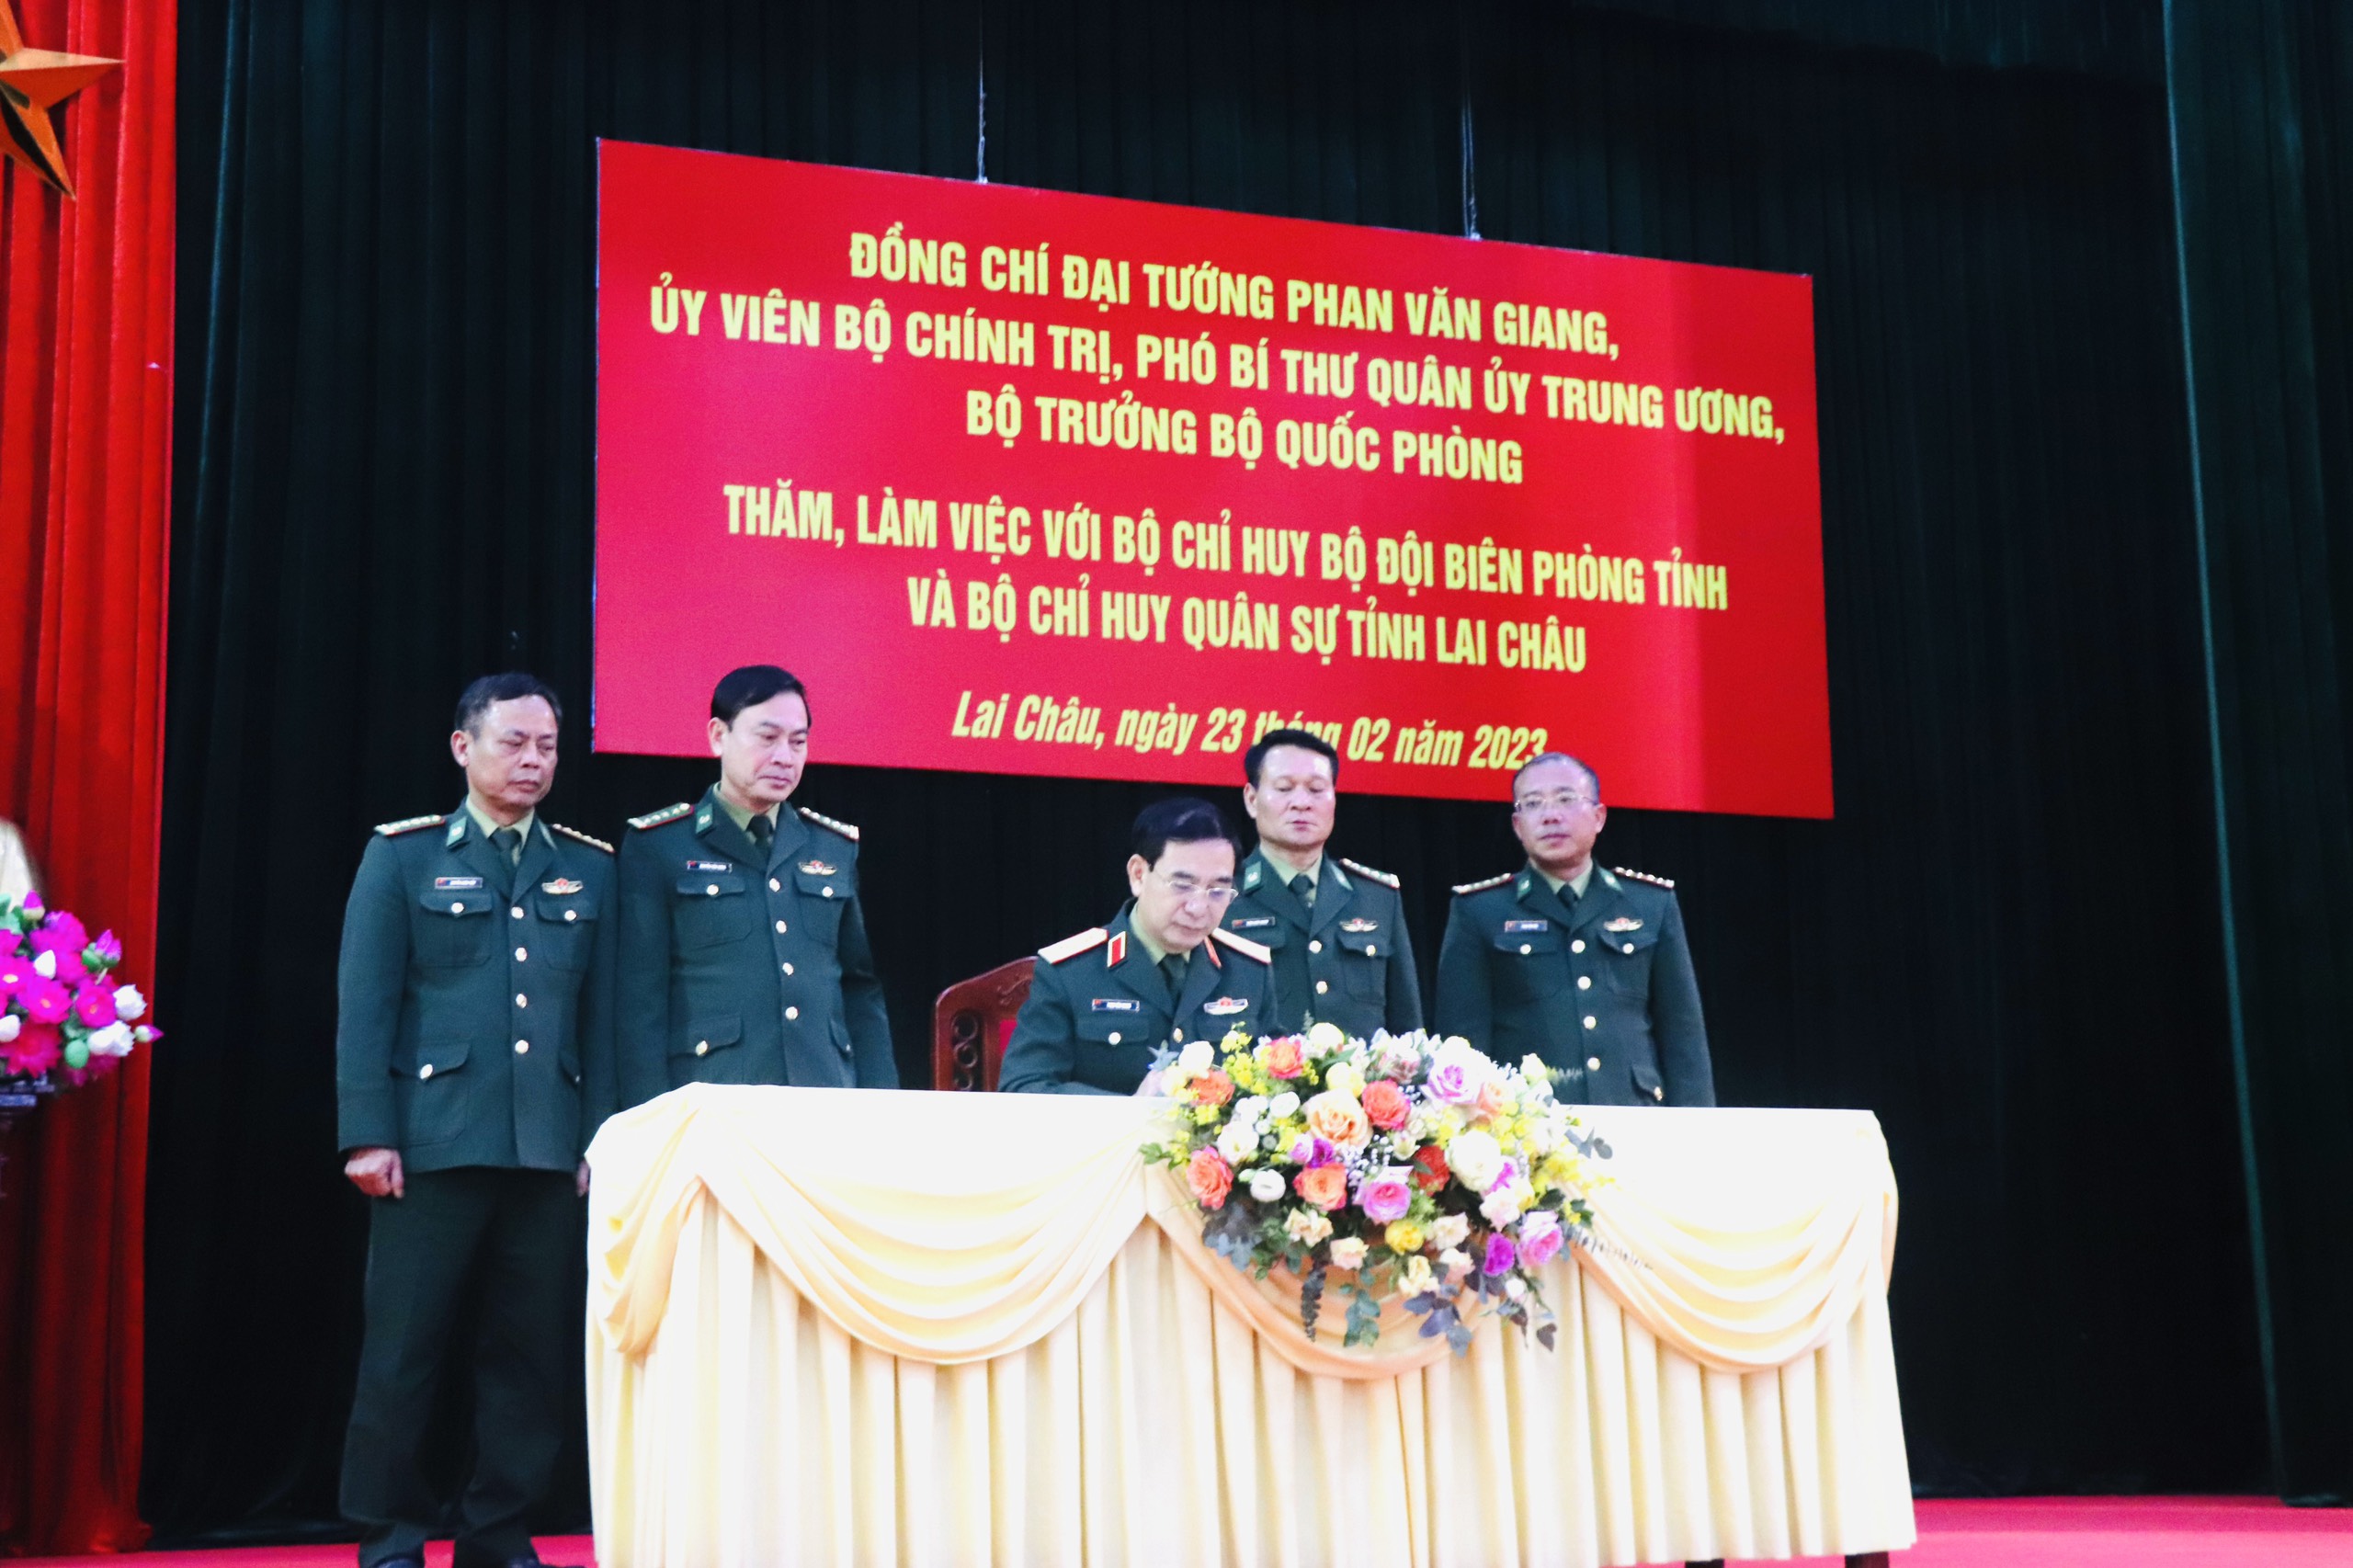 Các đồng chí lãnh đạo Bộ Chỉ huy Bộ đội Biên phòng tỉnh Lai Châu chứng kiến Đại tướng Phan Văn Giang ghi sổ vàng